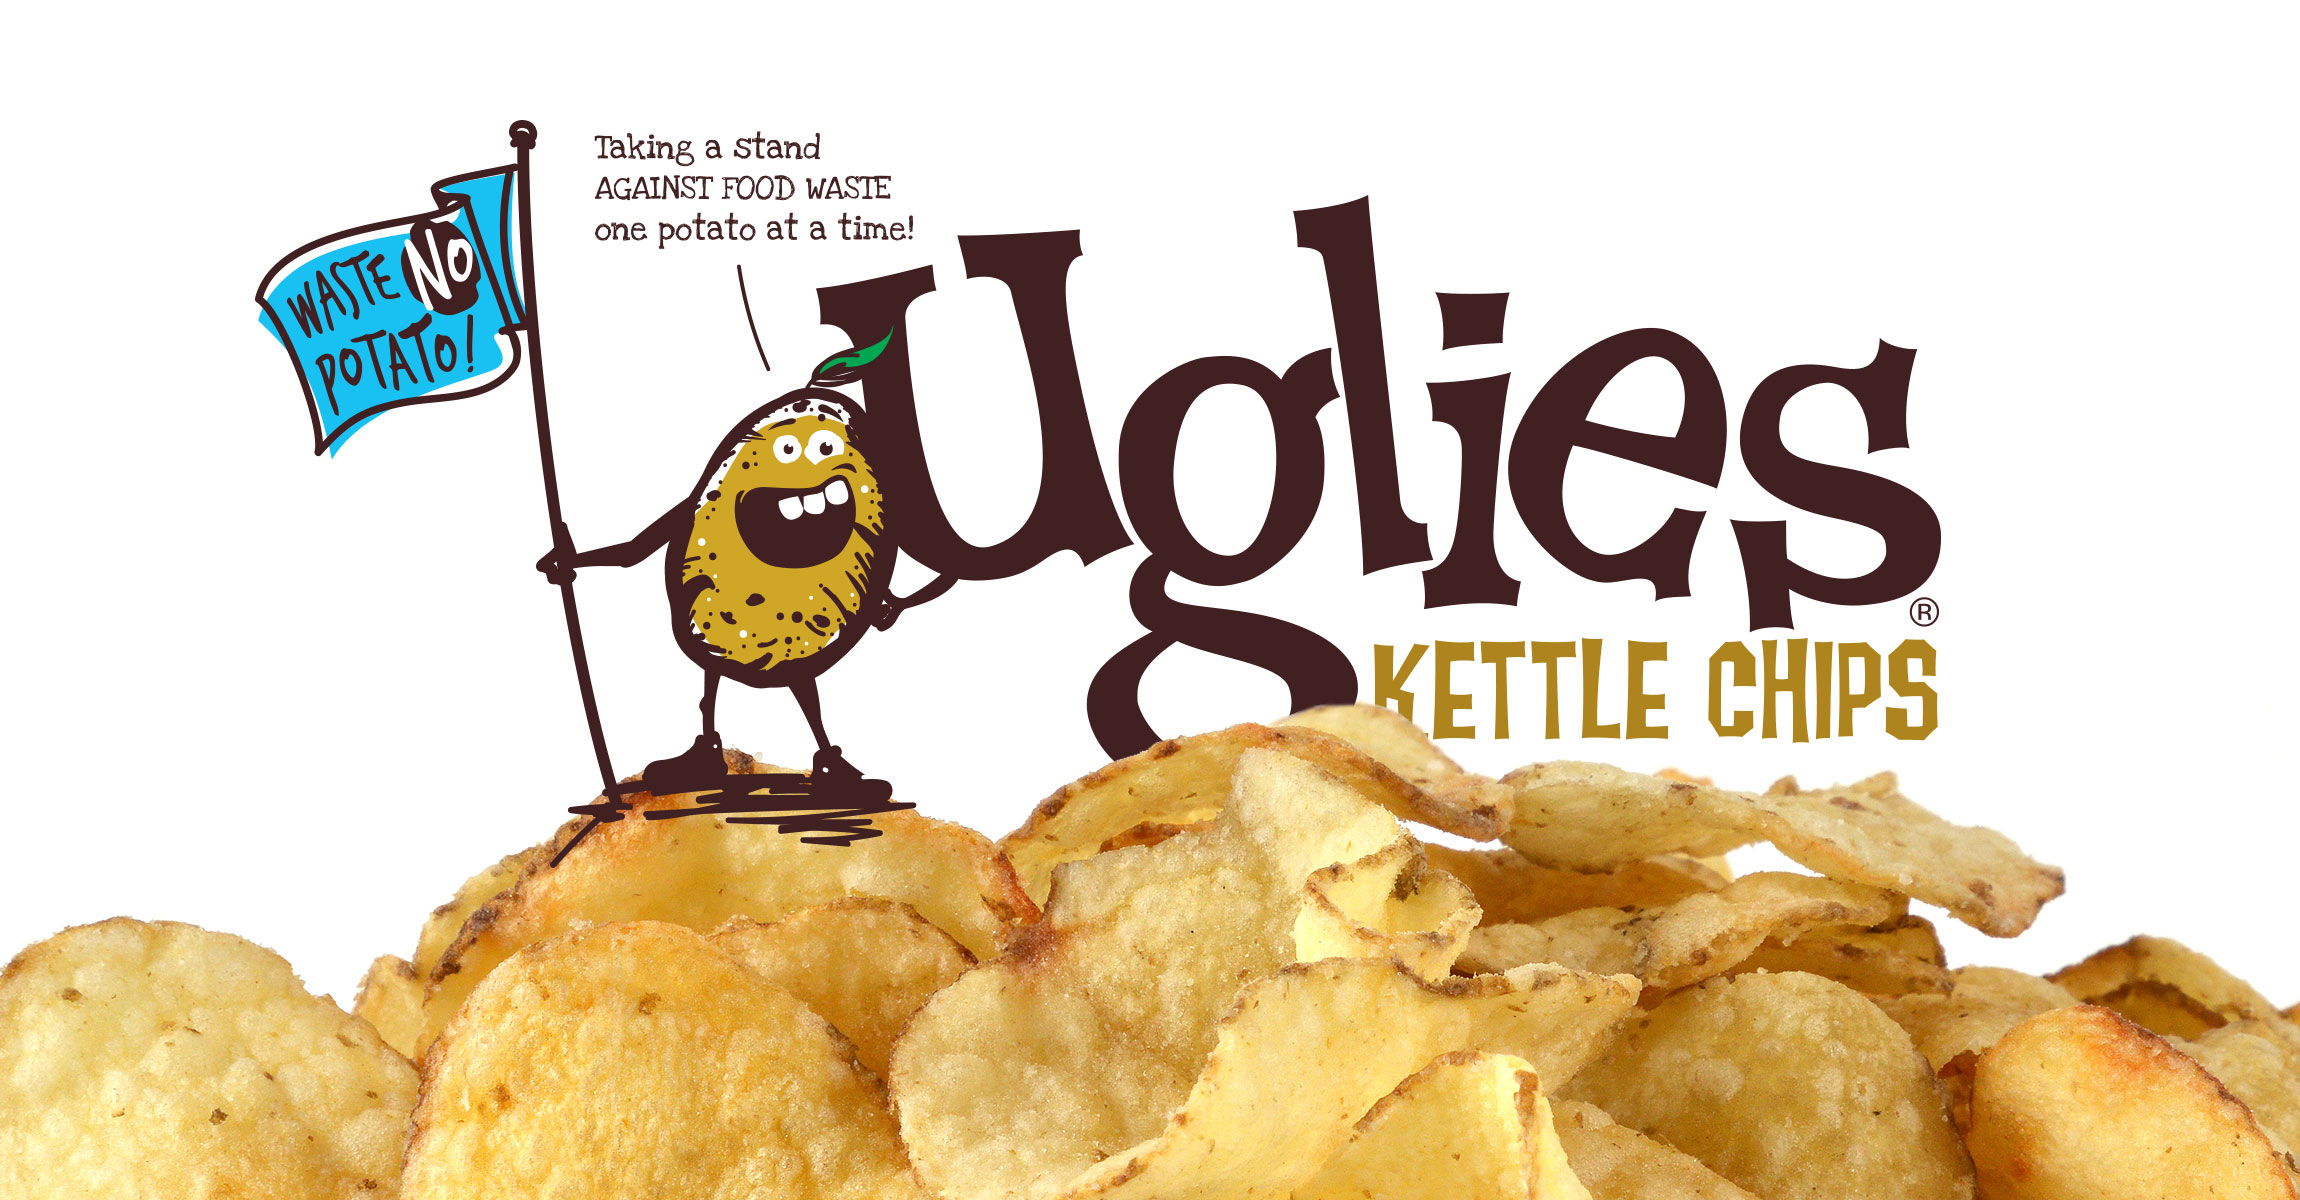 Uglies KETTLE CHIPS薯片包装设计